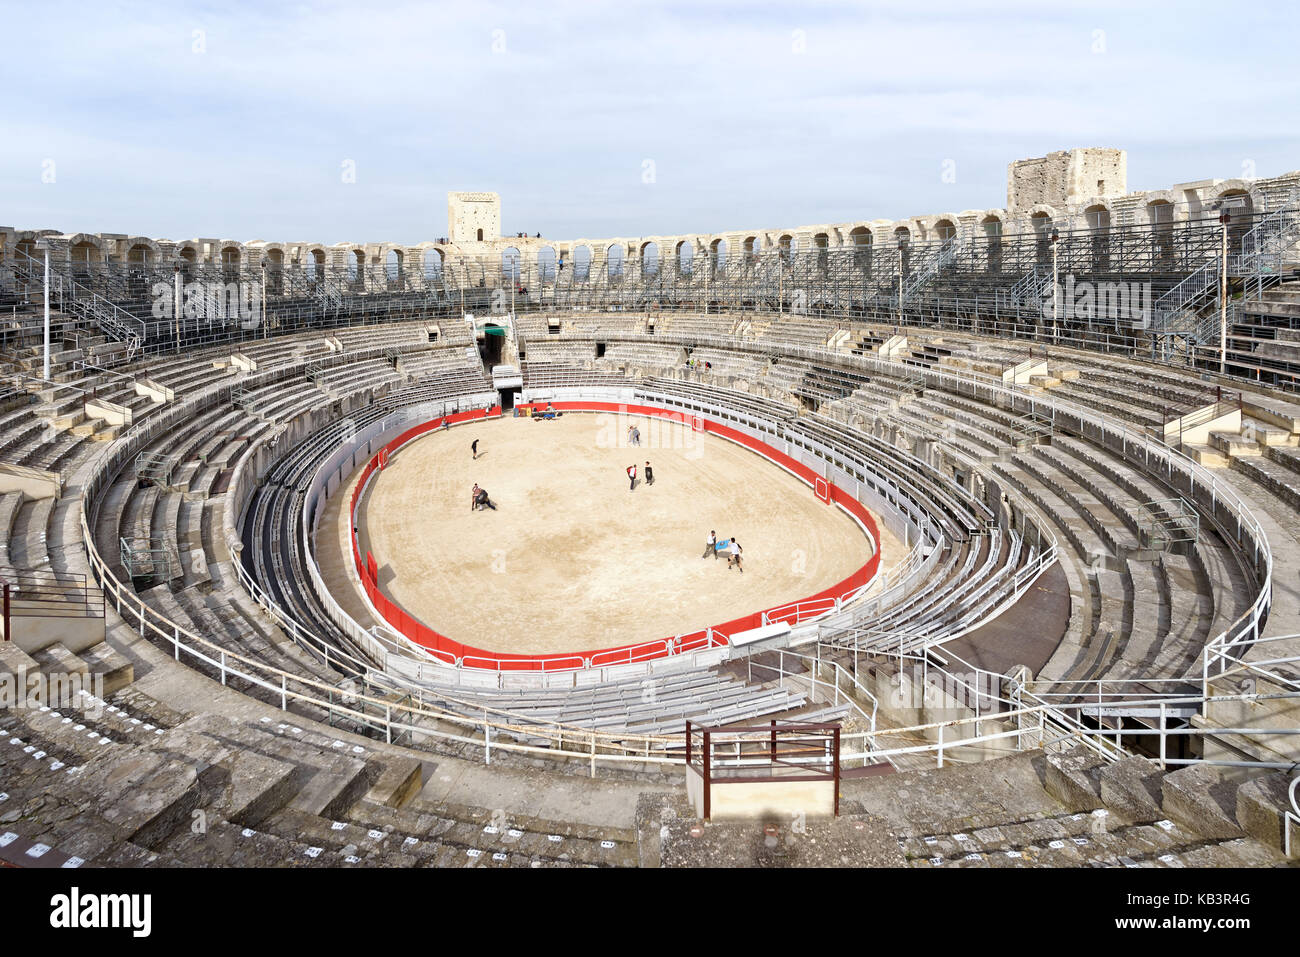 Frankreich, Bouches-du-Rhone, Arles, die Arenen, das römische Amphitheater von 80-90 Ad, als Weltkulturerbe von der unesco Stockfoto